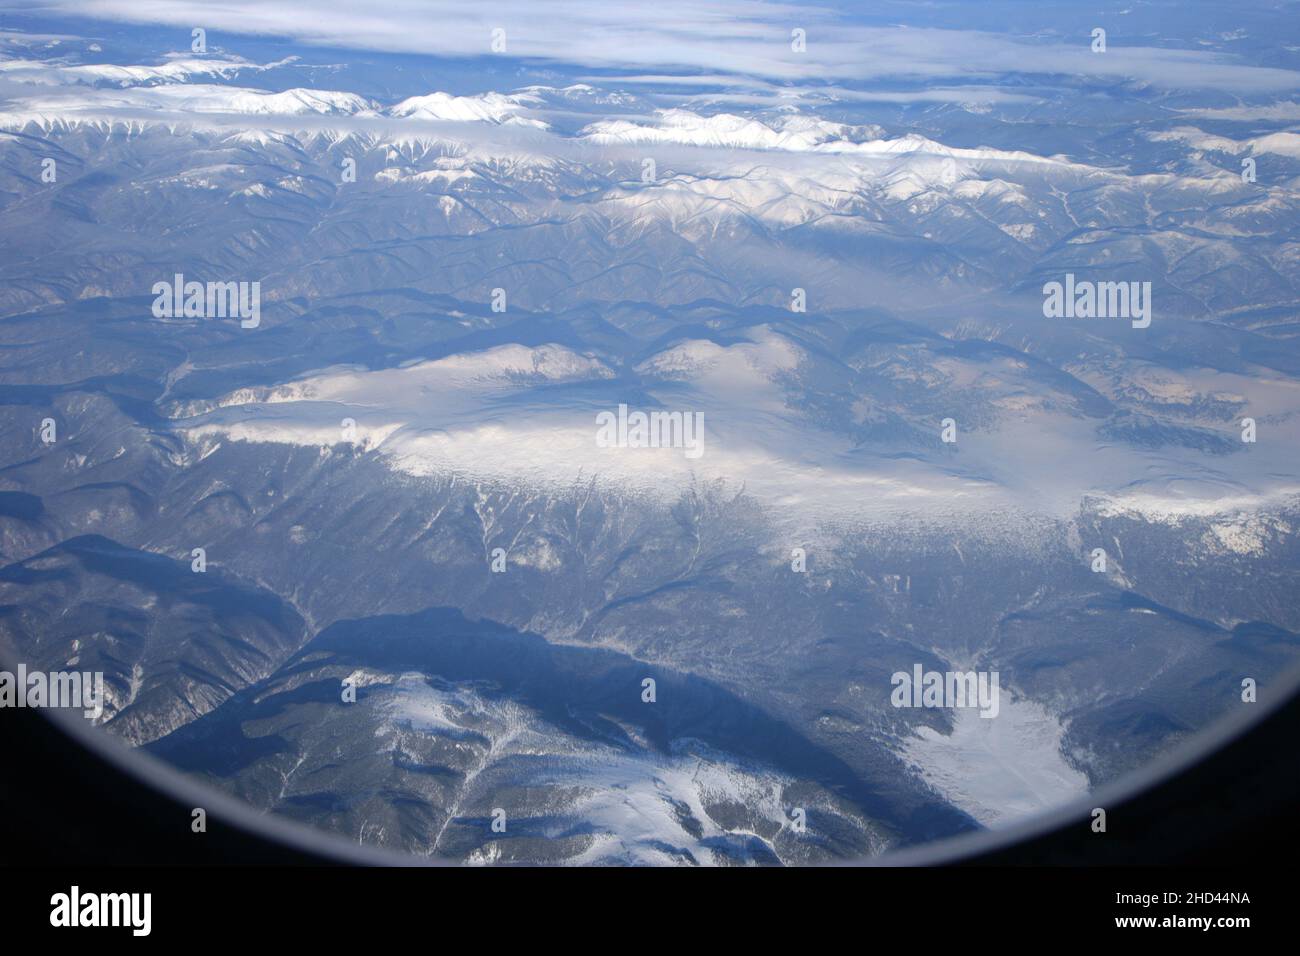 Mongolei unter Schnee von einem Air China Flugzeug aus gesehen Stockfoto